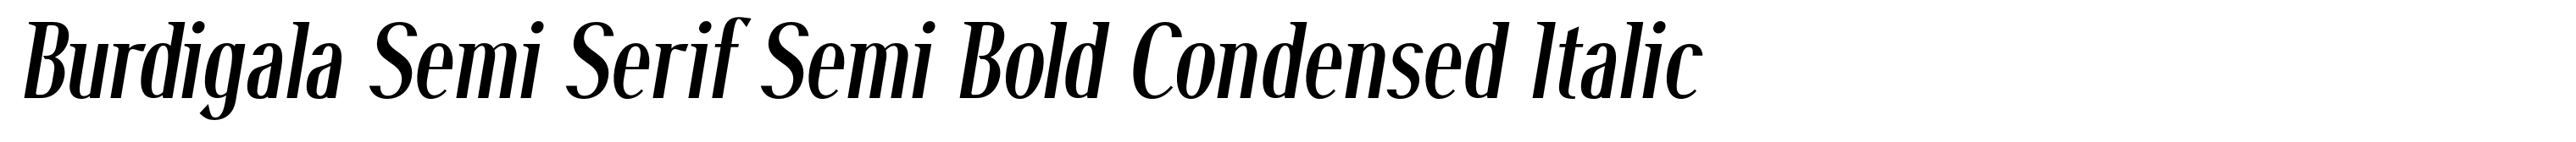 Burdigala Semi Serif Semi Bold Condensed Italic